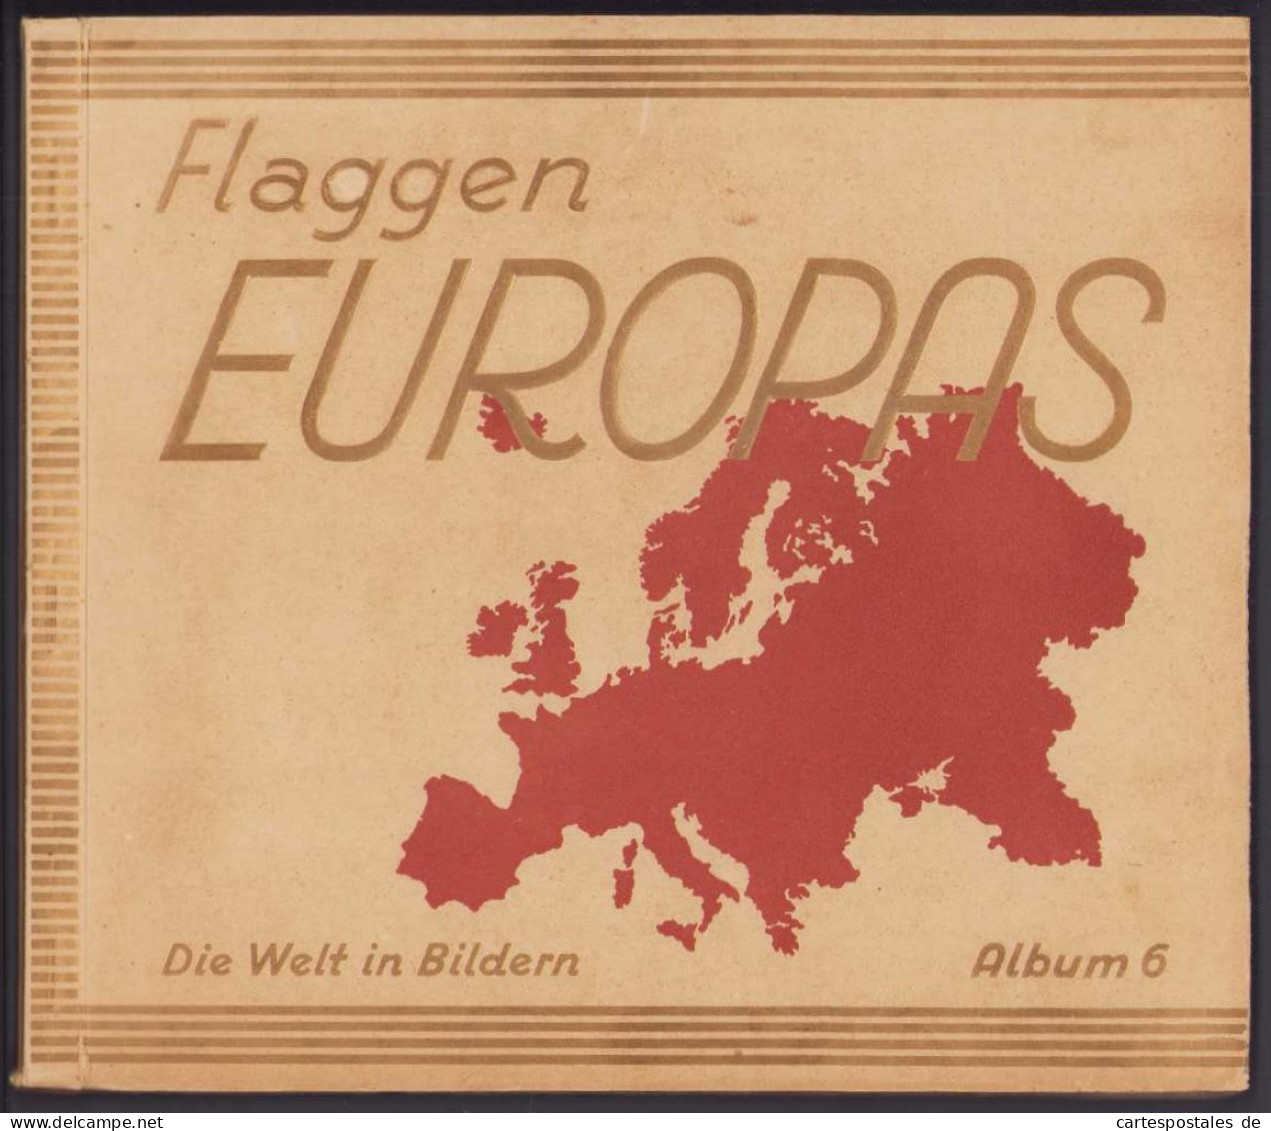 Sammelalbum 200 Bilder, Flaggen Europas Album 6, Deutsches Reich, Grossbritannien, Russland, Jugoslawien, Tschechoslow  - Albums & Catalogues